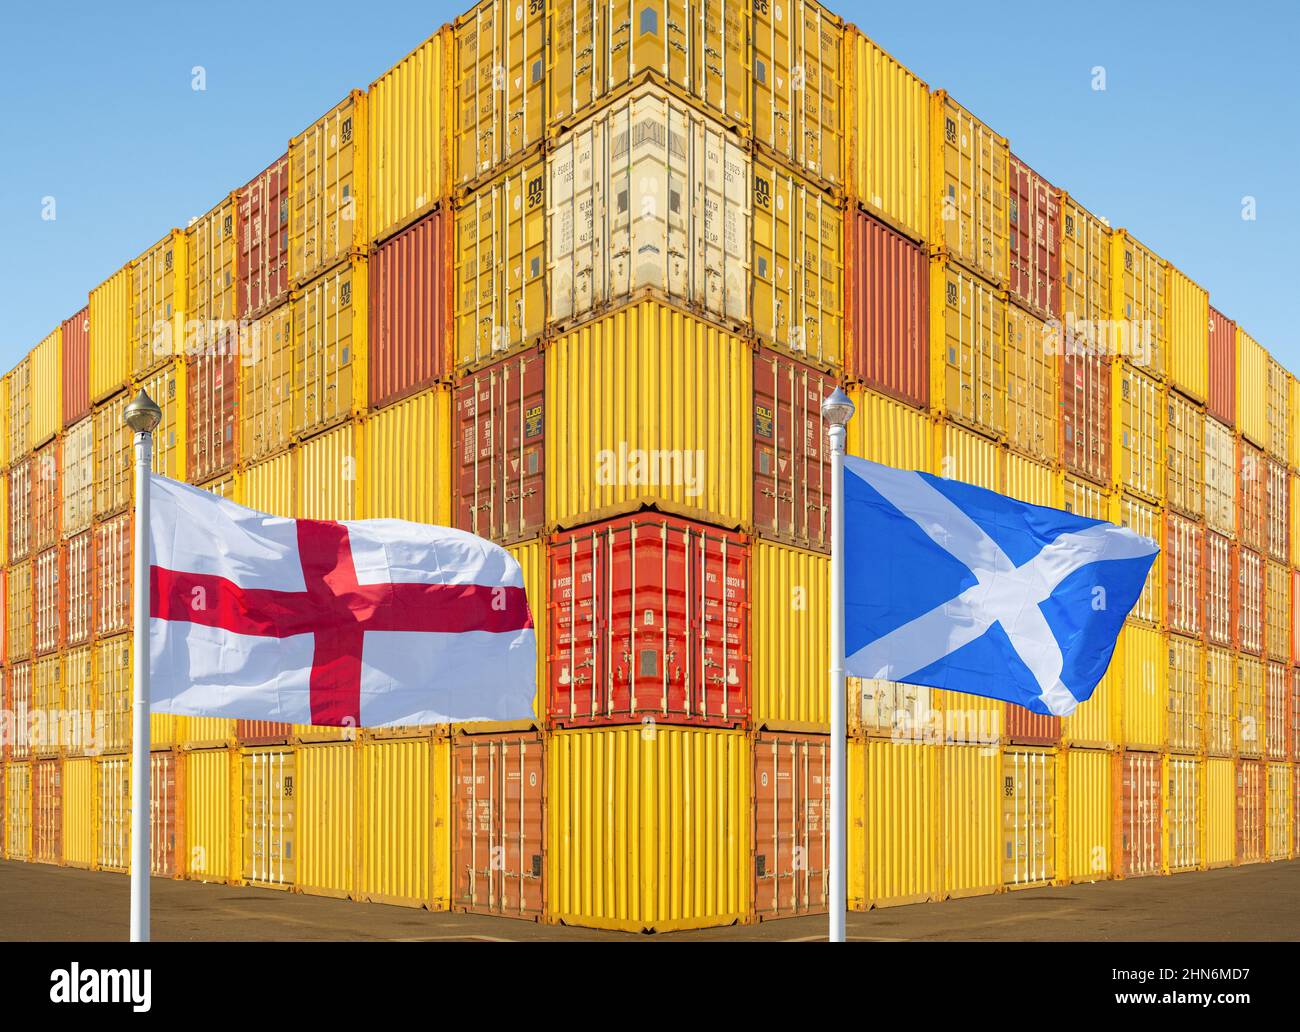 Bandiere di Inghilterra e Scozia con i contenitori impilati di spedizione in background. Freeport, Freeport, Brexit, indipendenza, economia, commercio... concetto Foto Stock